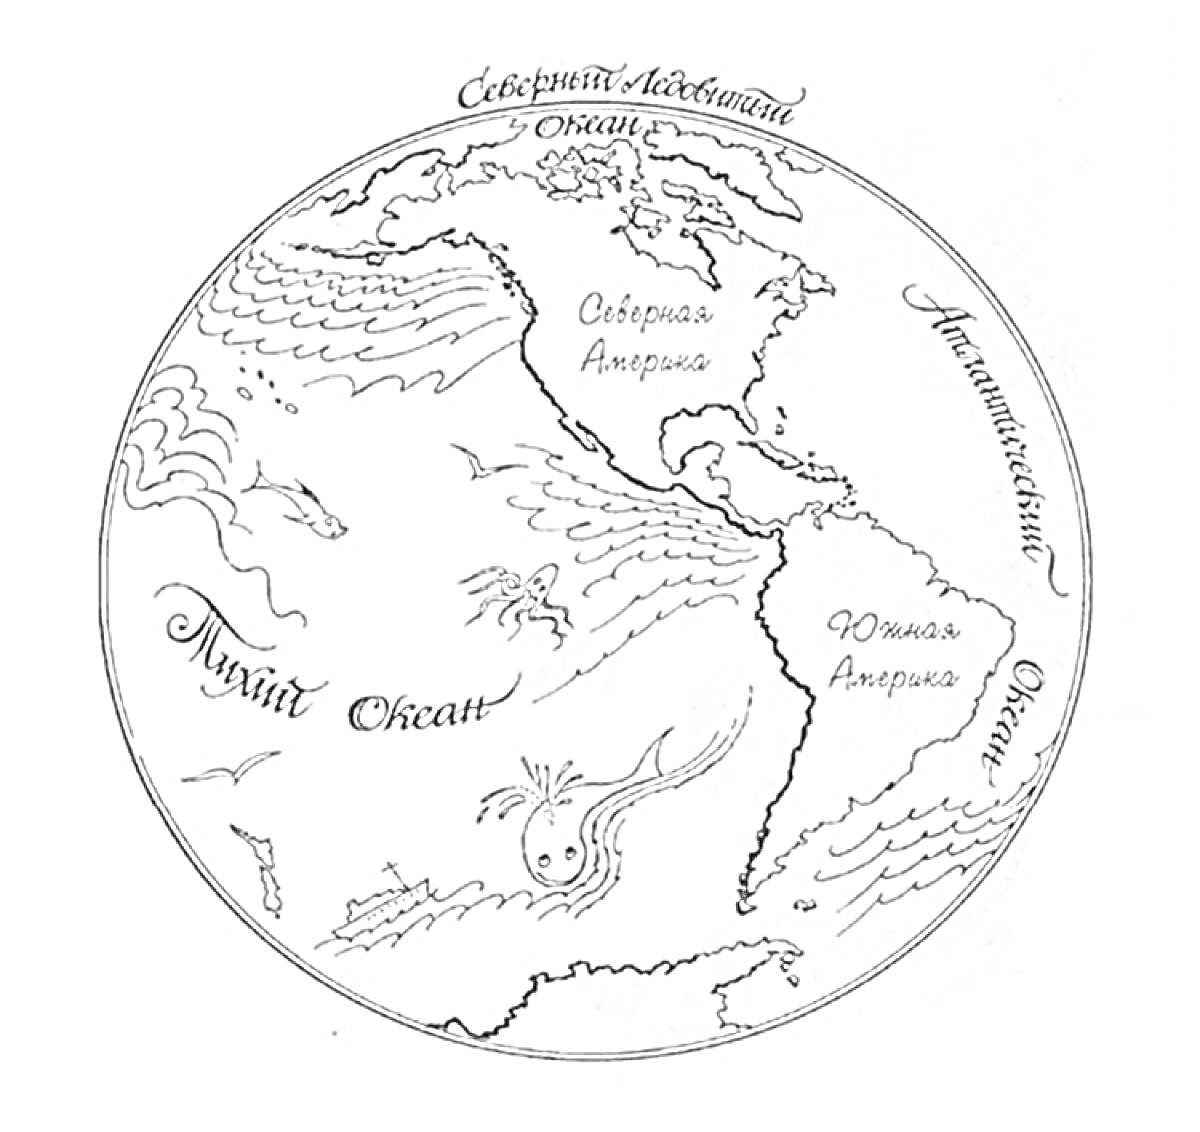 Раскраска Карта мира с изображением Северного и Южного полушарий, с подписанными материками Северная и Южная Америка, а также океанами Северный Ледовитый океан, Атлантический океан и Тихий океан, водными существами и морскими волнами.